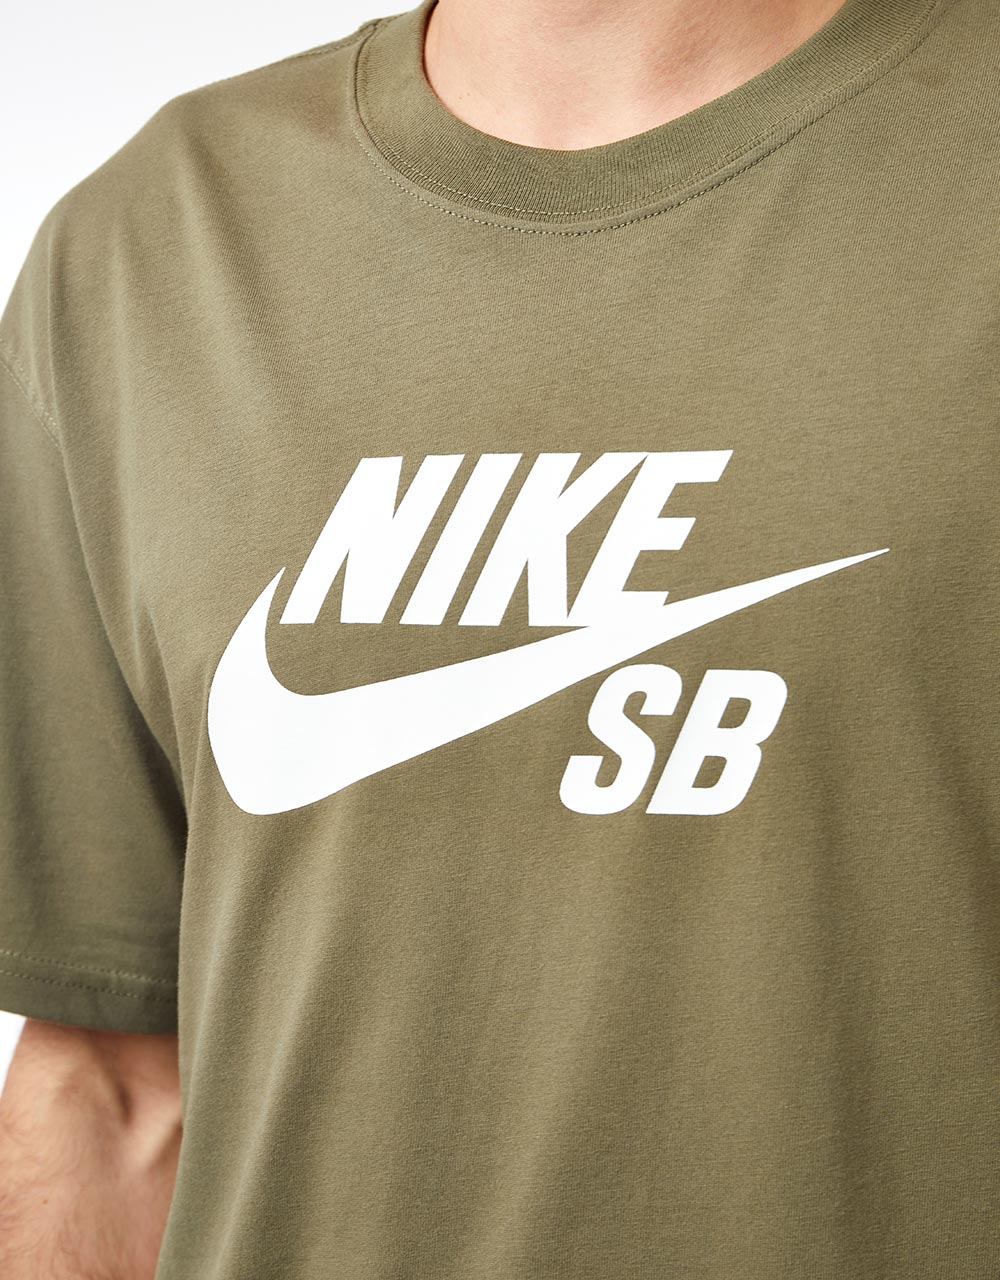 Nike SB Central Logo T-Shirt - Medium Olive